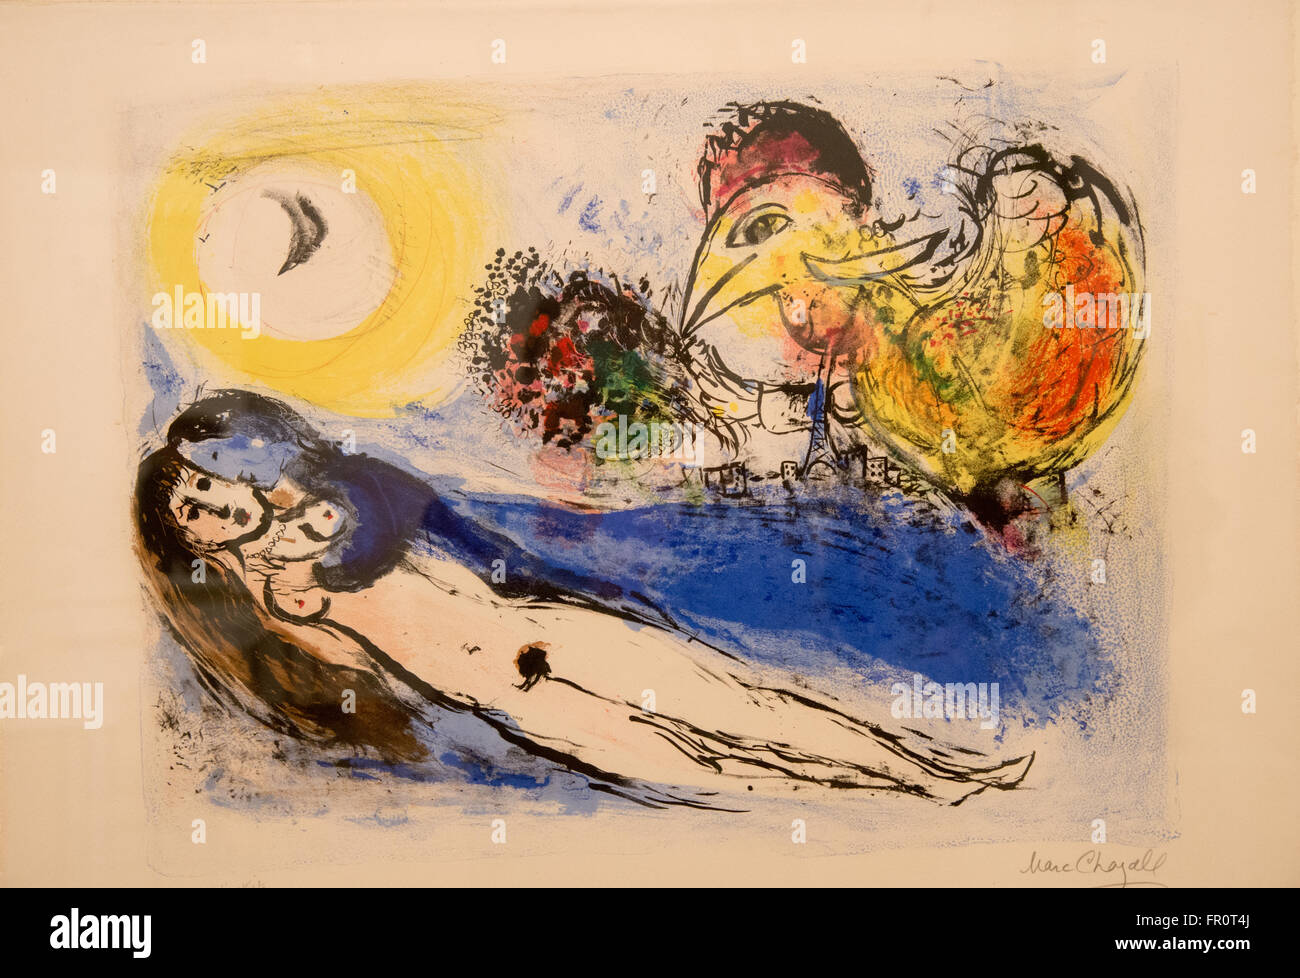 'Bonjour sur paris' chagall 1952 Litografía Foto de stock